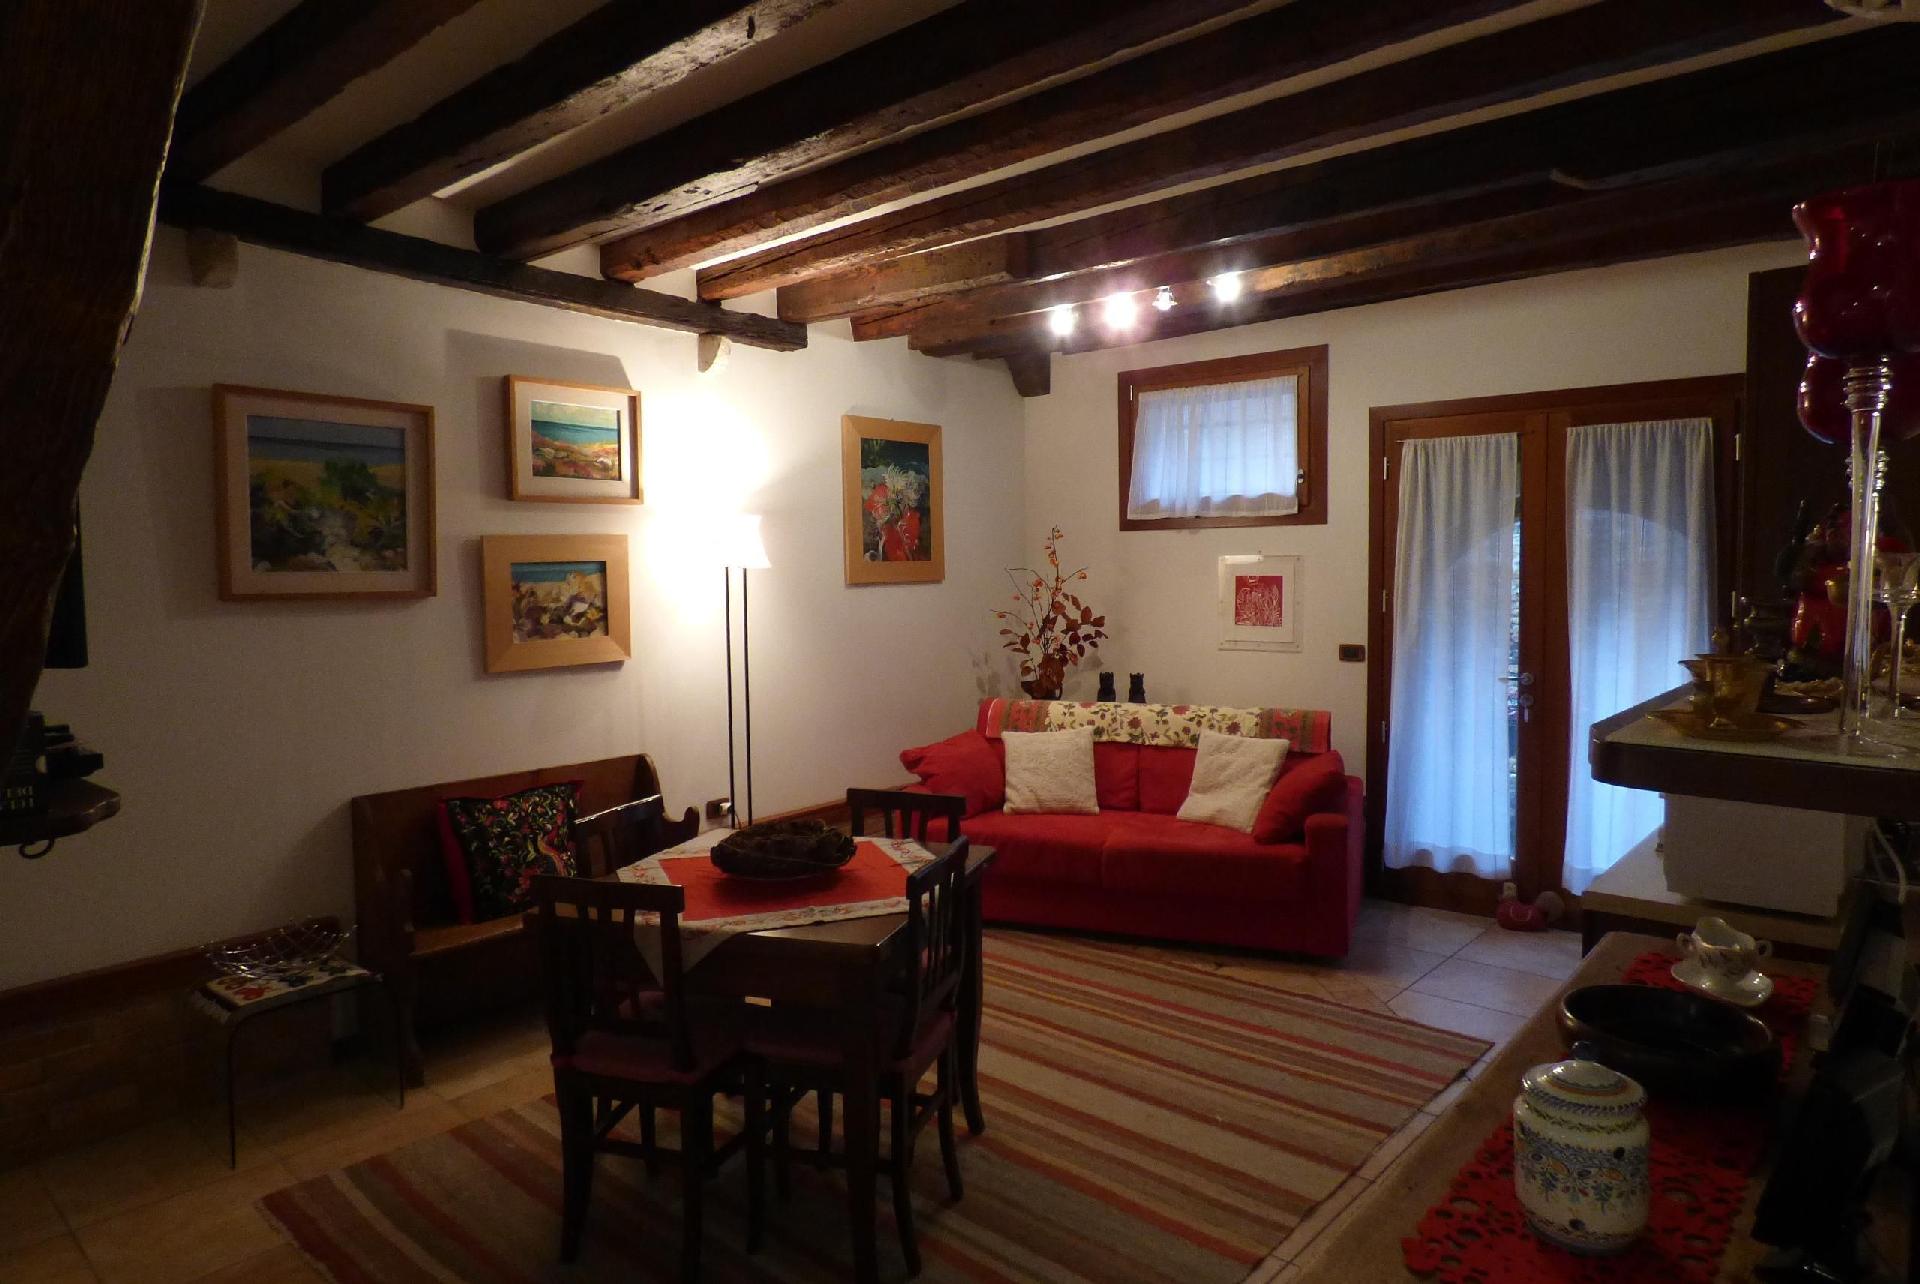 Ferienwohnung für 4 Personen ca. 55 m² i Ferienhaus in Italien